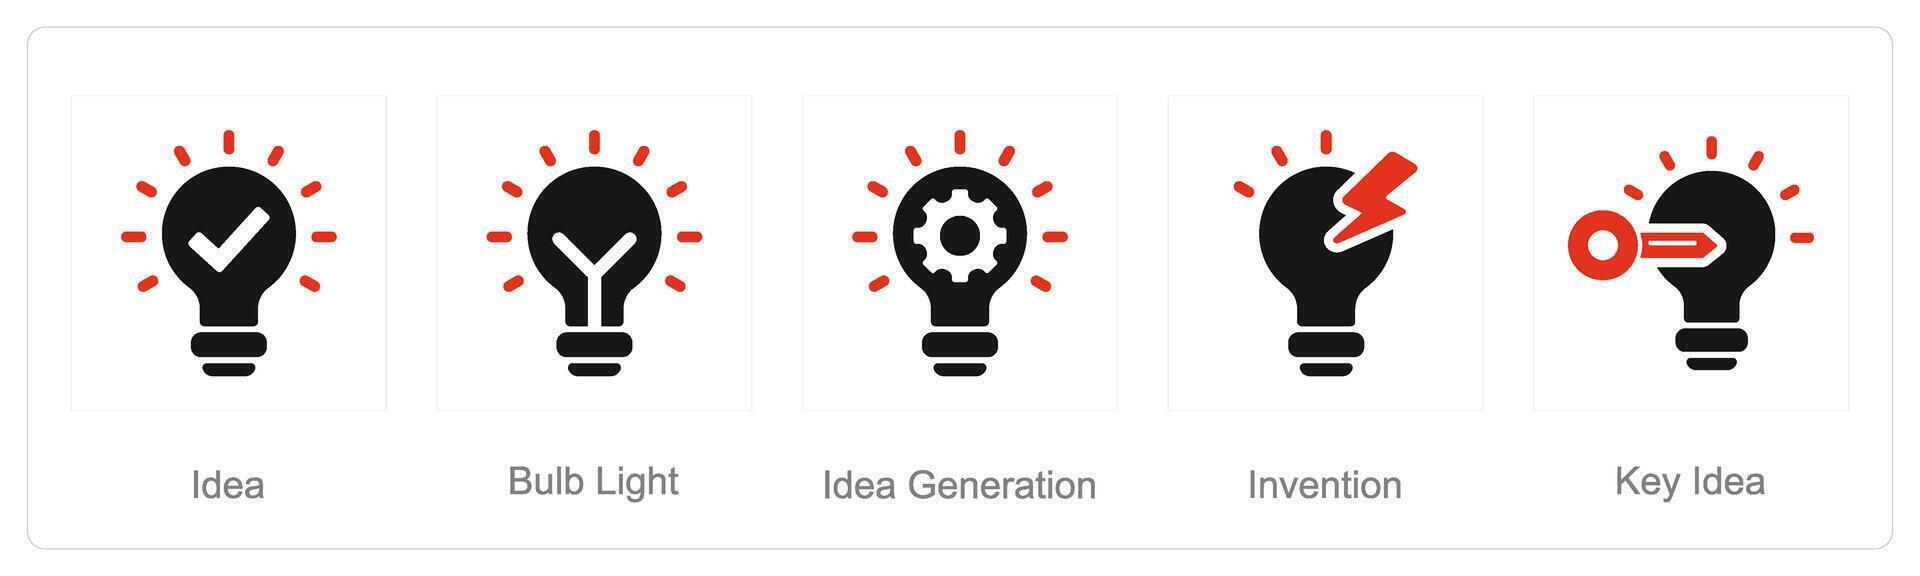 een reeks van 5 idee pictogrammen net zo idee, lamp licht, idee generatie vector